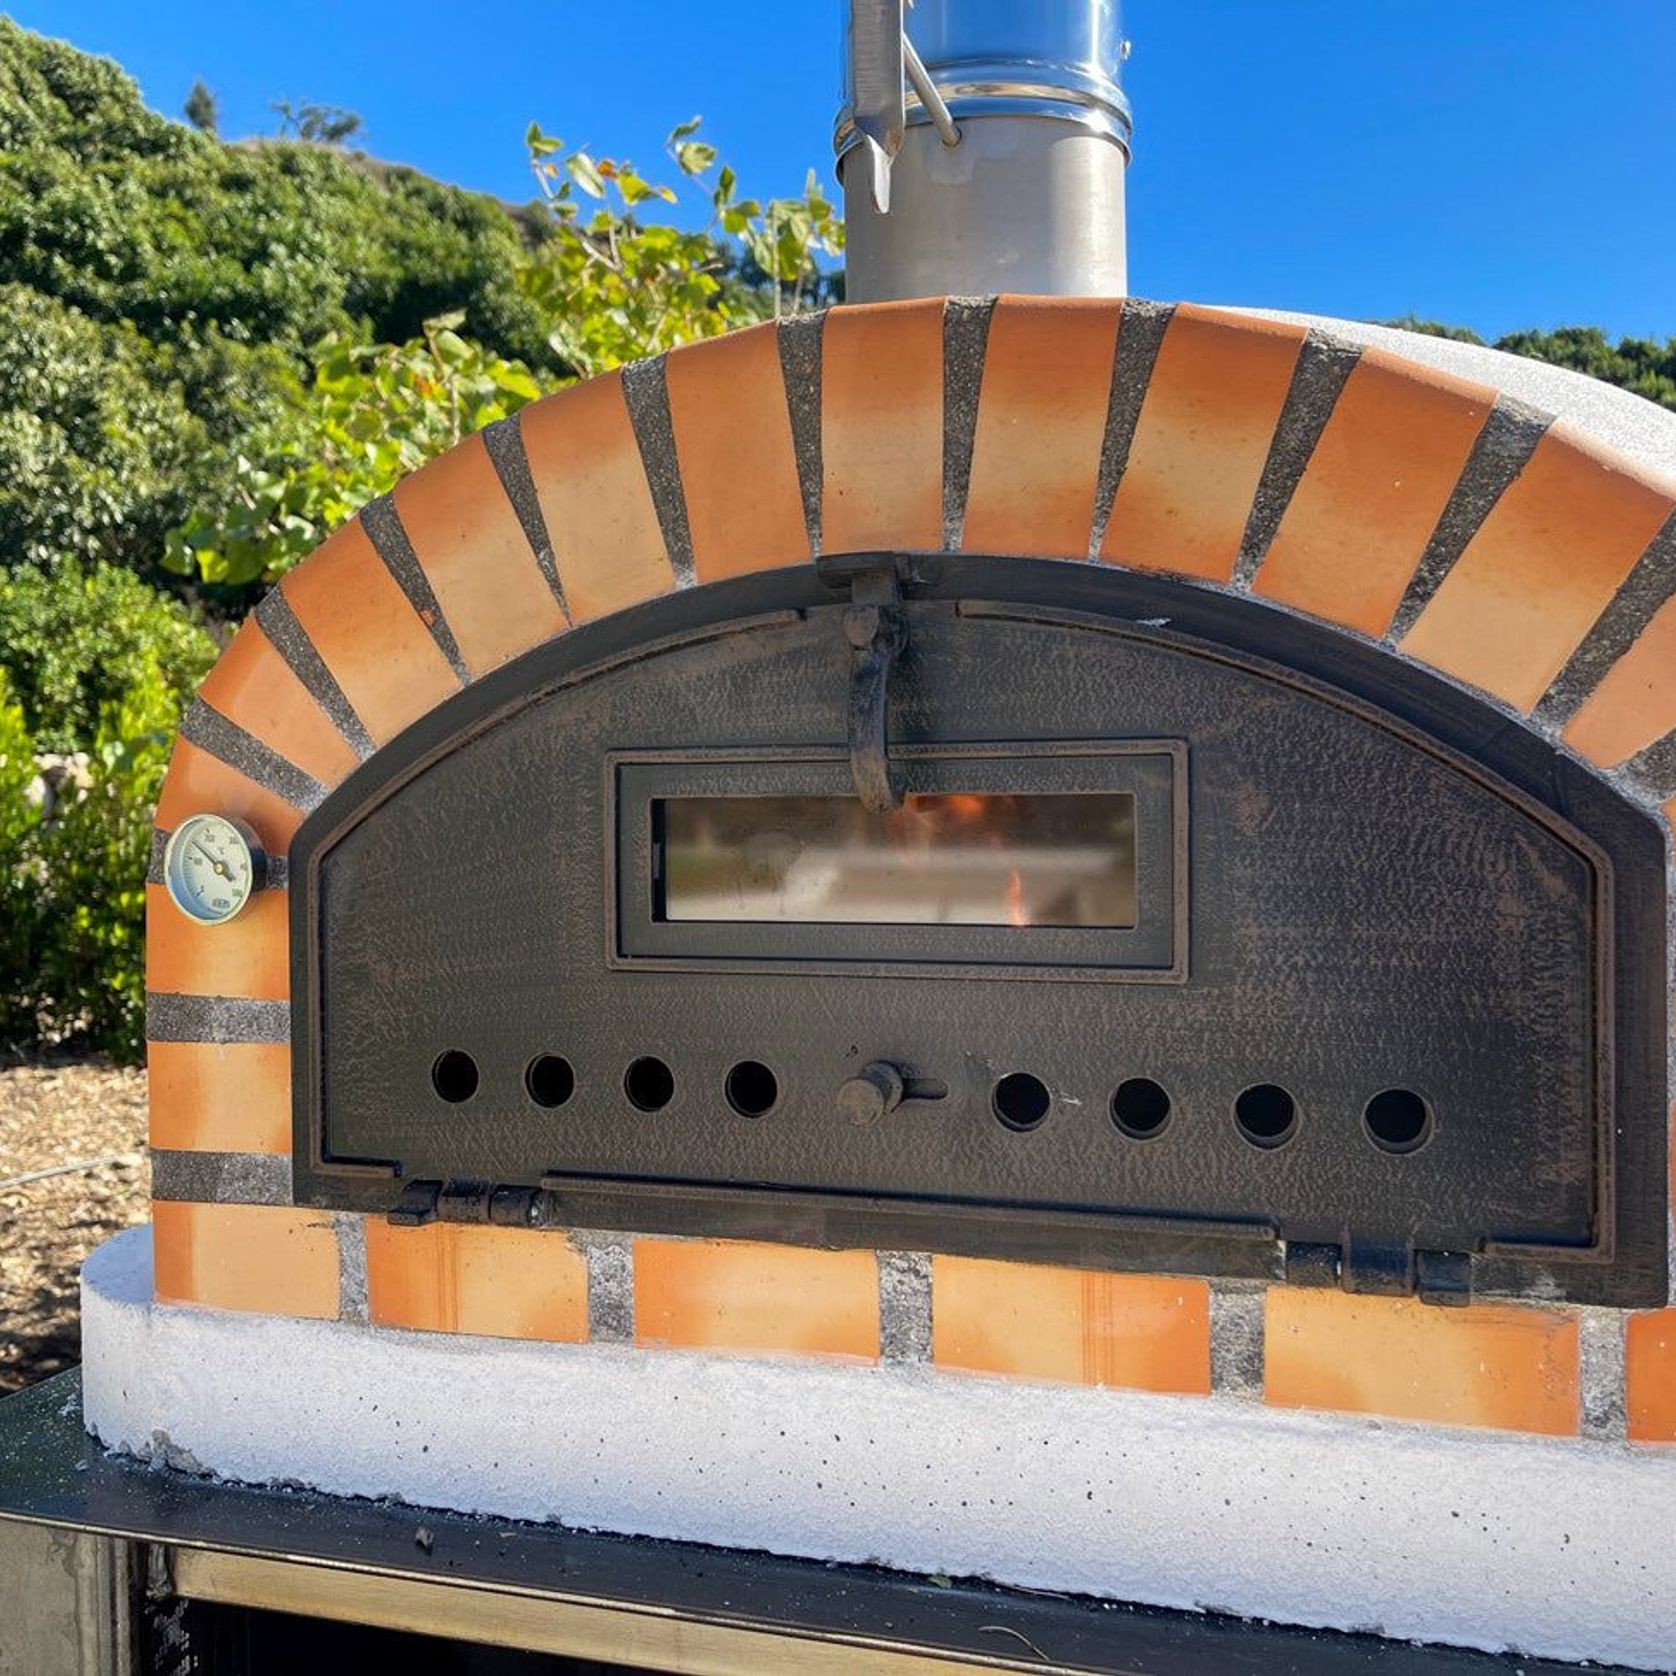 Pizzaioli Premium Door Wood Fired Pizza Oven gallery detail image